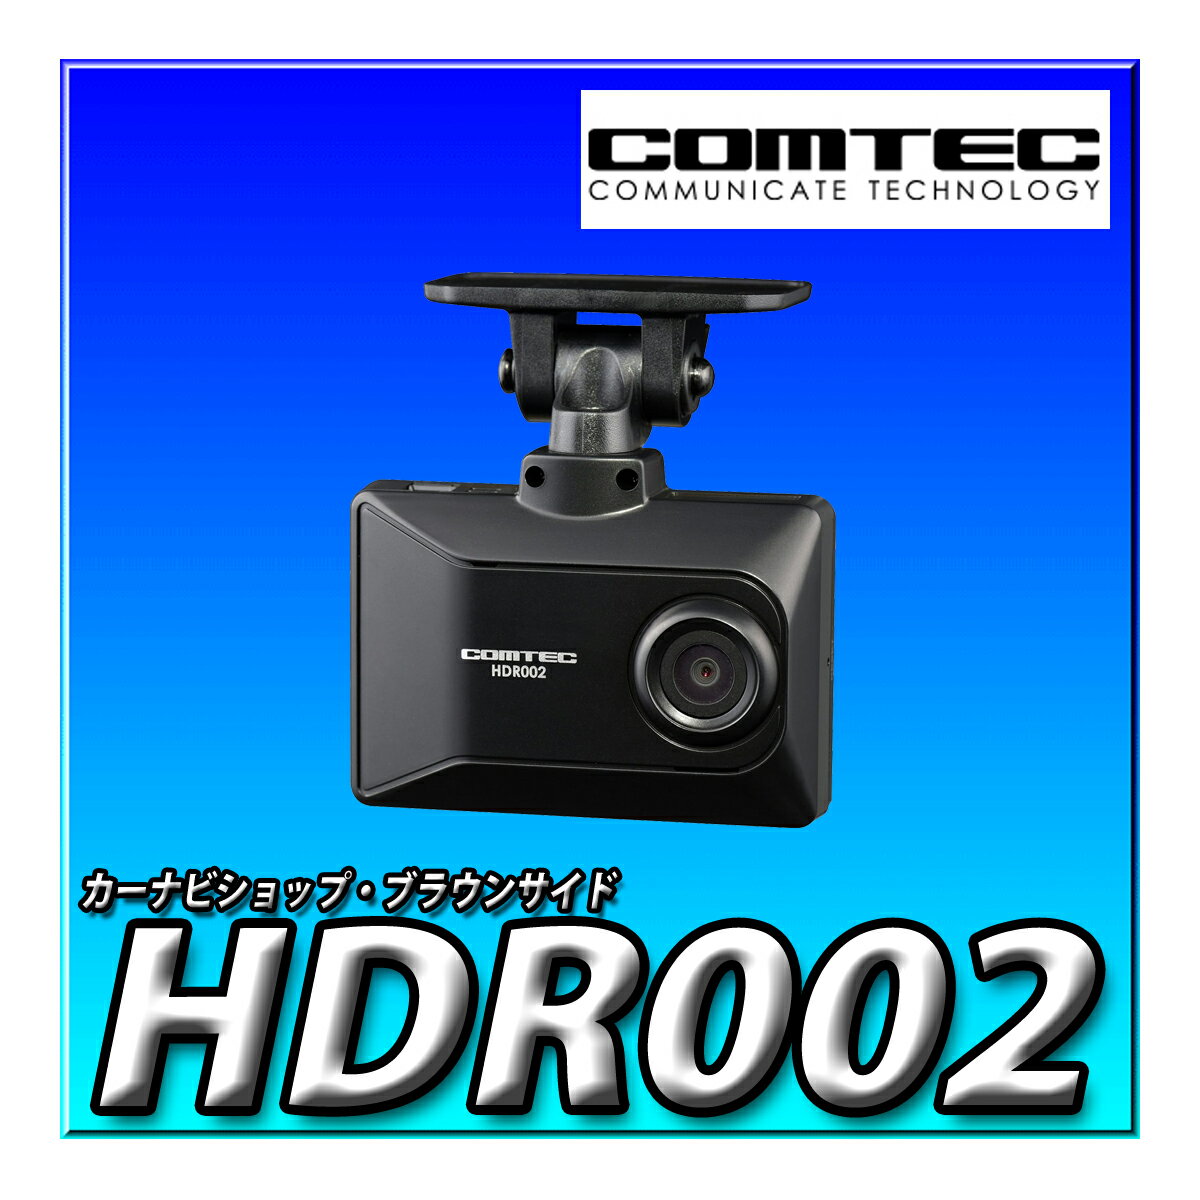 HDR002 コムテック 車用 ドライブレコーダー 1カメラタイプ 200万画素 Full HD GPS microSDカードメンテナンスフリー対応 16GB 駐車監視 日本製 3年保証 COMTEC